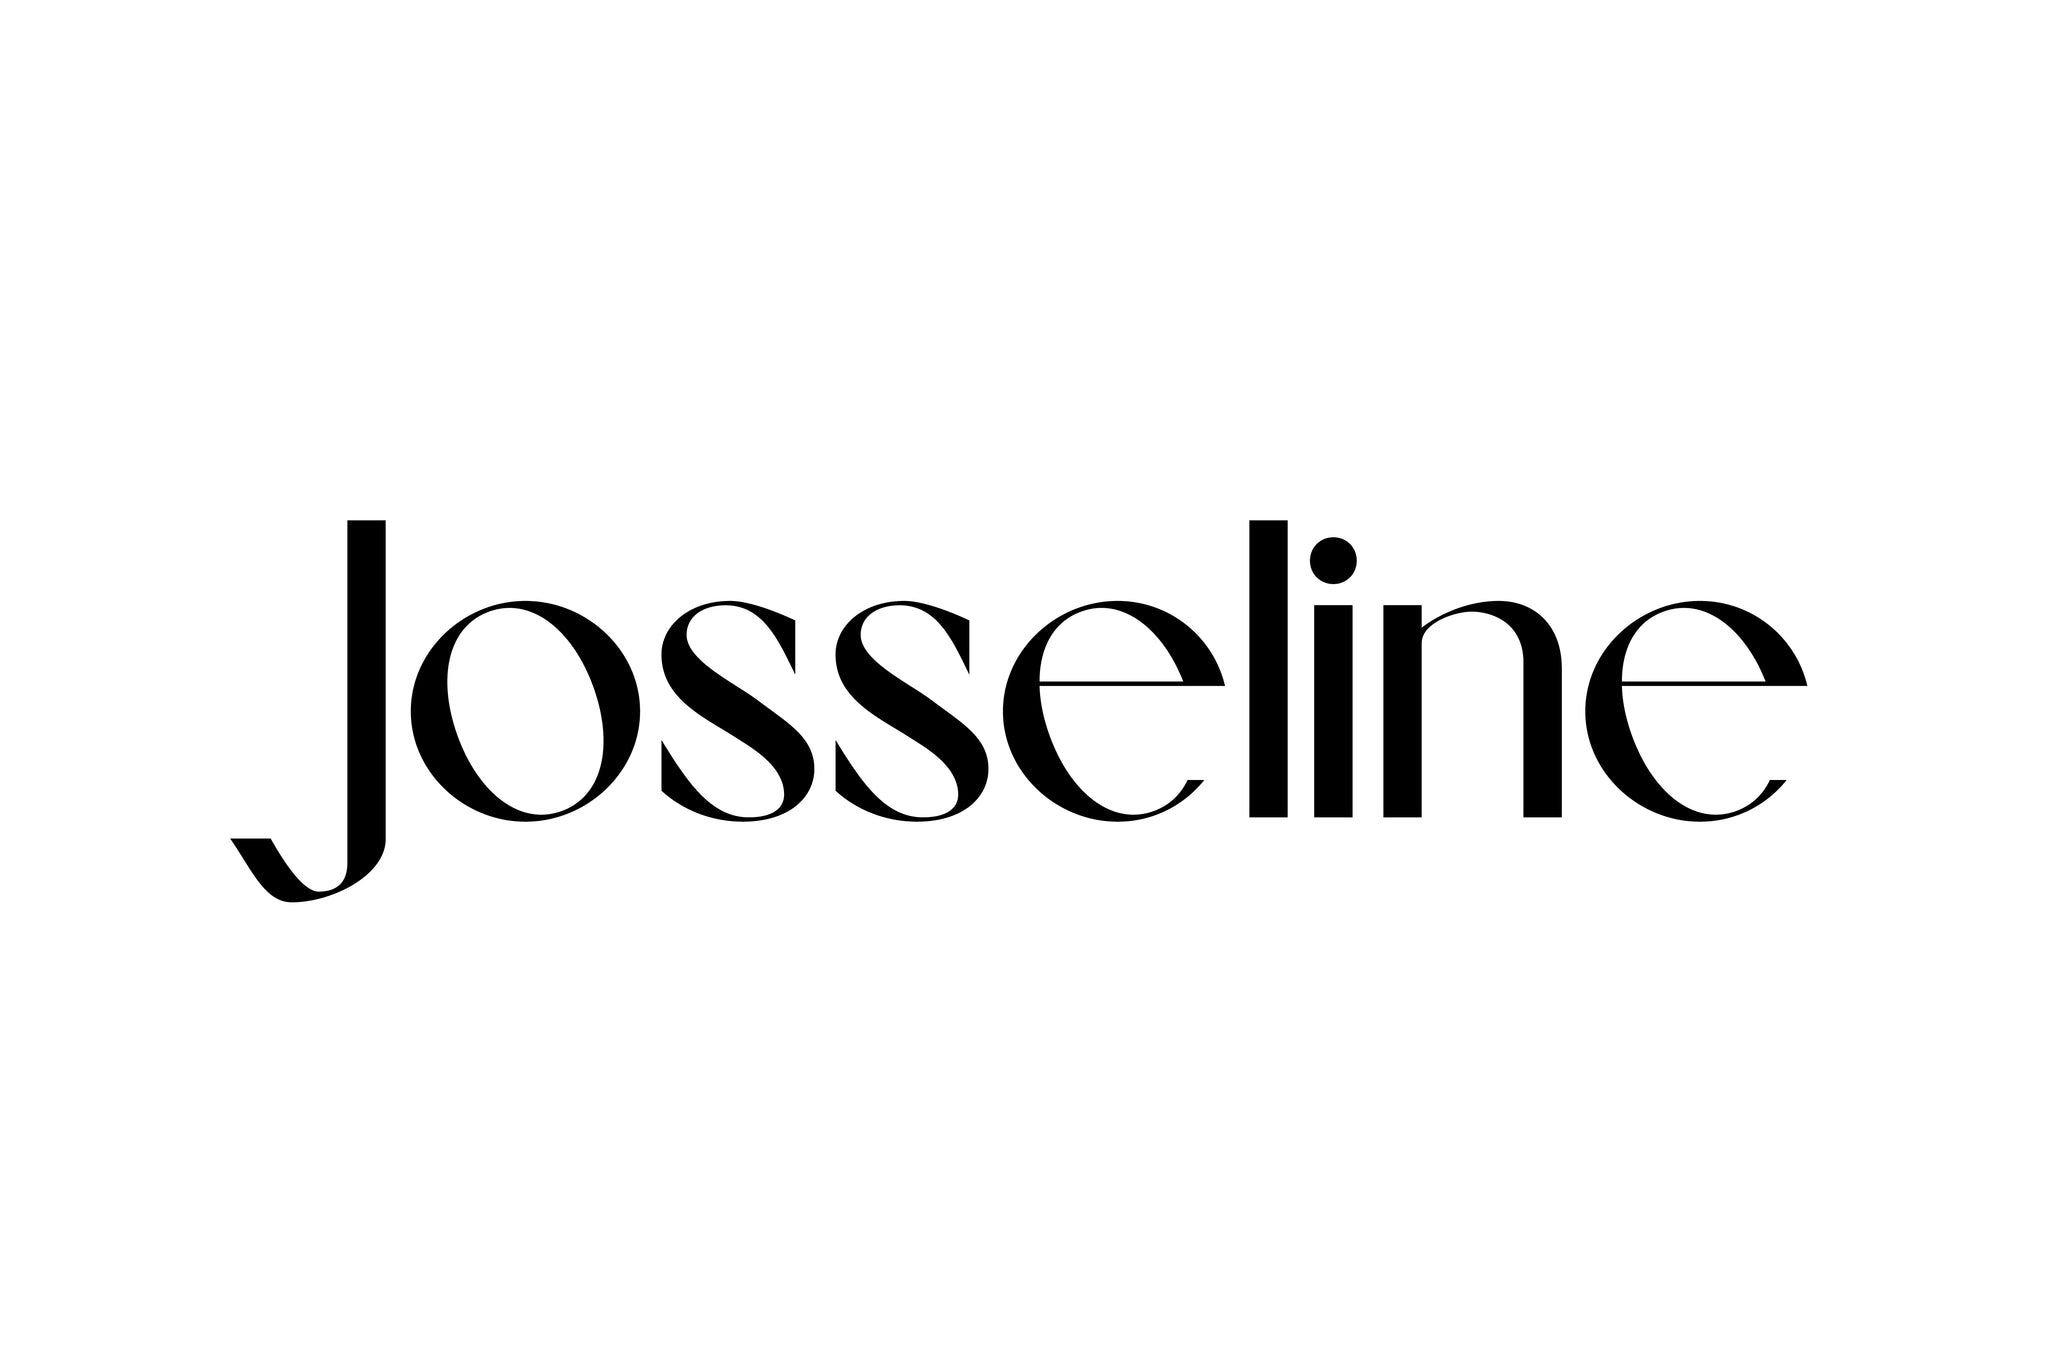 Josseline Font by SG Type